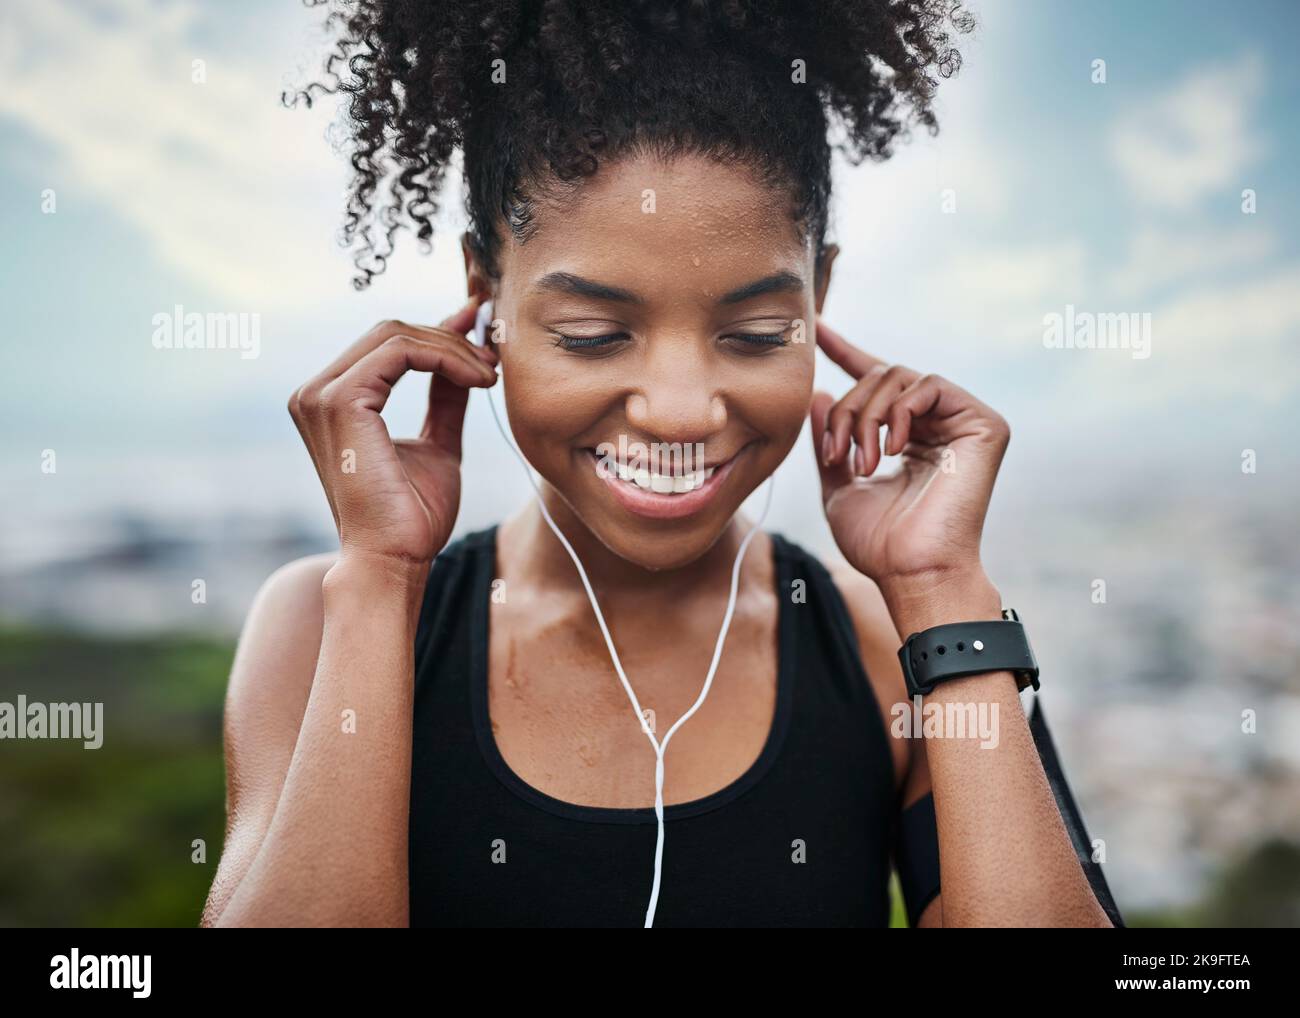 Das ist die Melodie, die mich in Bewegung hält. Eine sportliche junge Frau, die Musik hört, während sie im Freien trainiert. Stockfoto